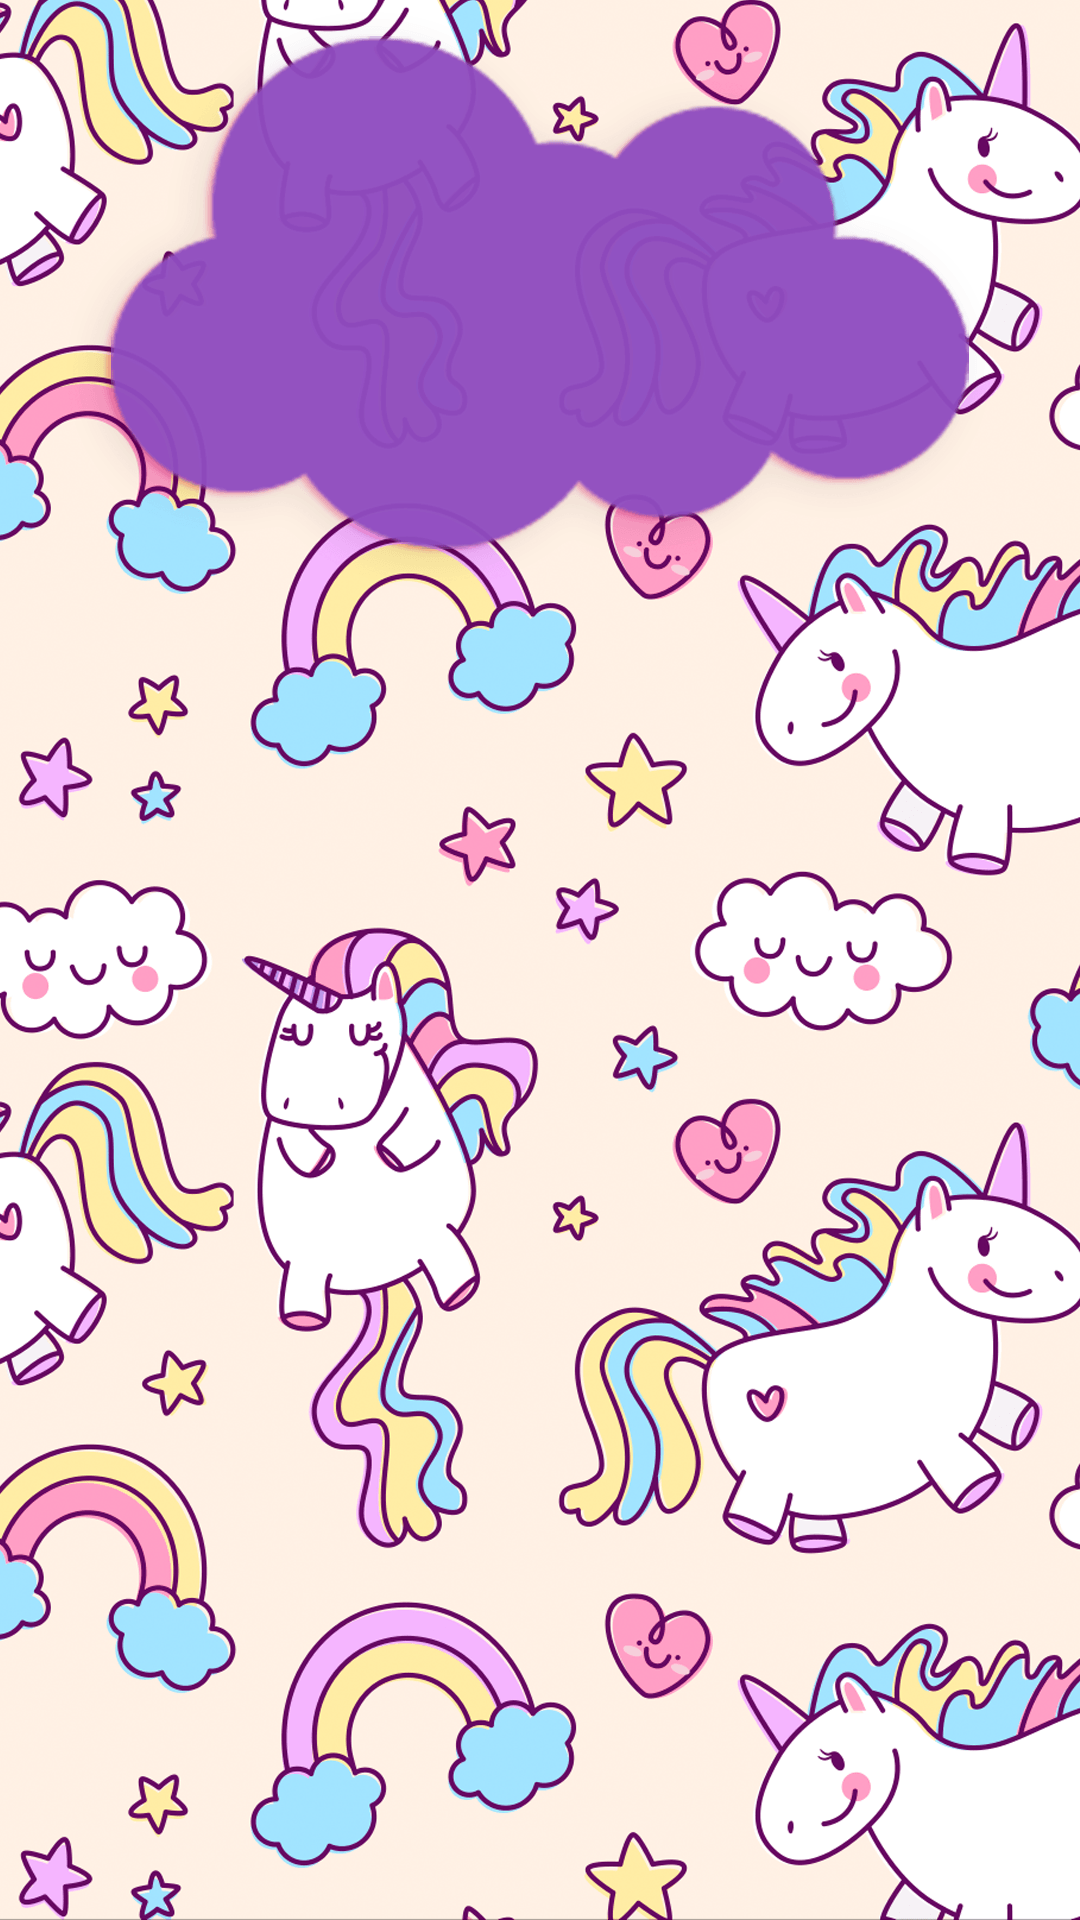 Hình nền unicorn hồng sẽ làm cho màn hình điện thoại hay máy tính của bạn trở nên xinh đẹp hơn rất nhiều. Bạn sẽ được trải nghiệm cảm giác thật dễ chịu khi nhìn vào hình nền này, và còn có thể cảm nhận được sự ngọt ngào và mơ mộng của những chú unicorn nữa.